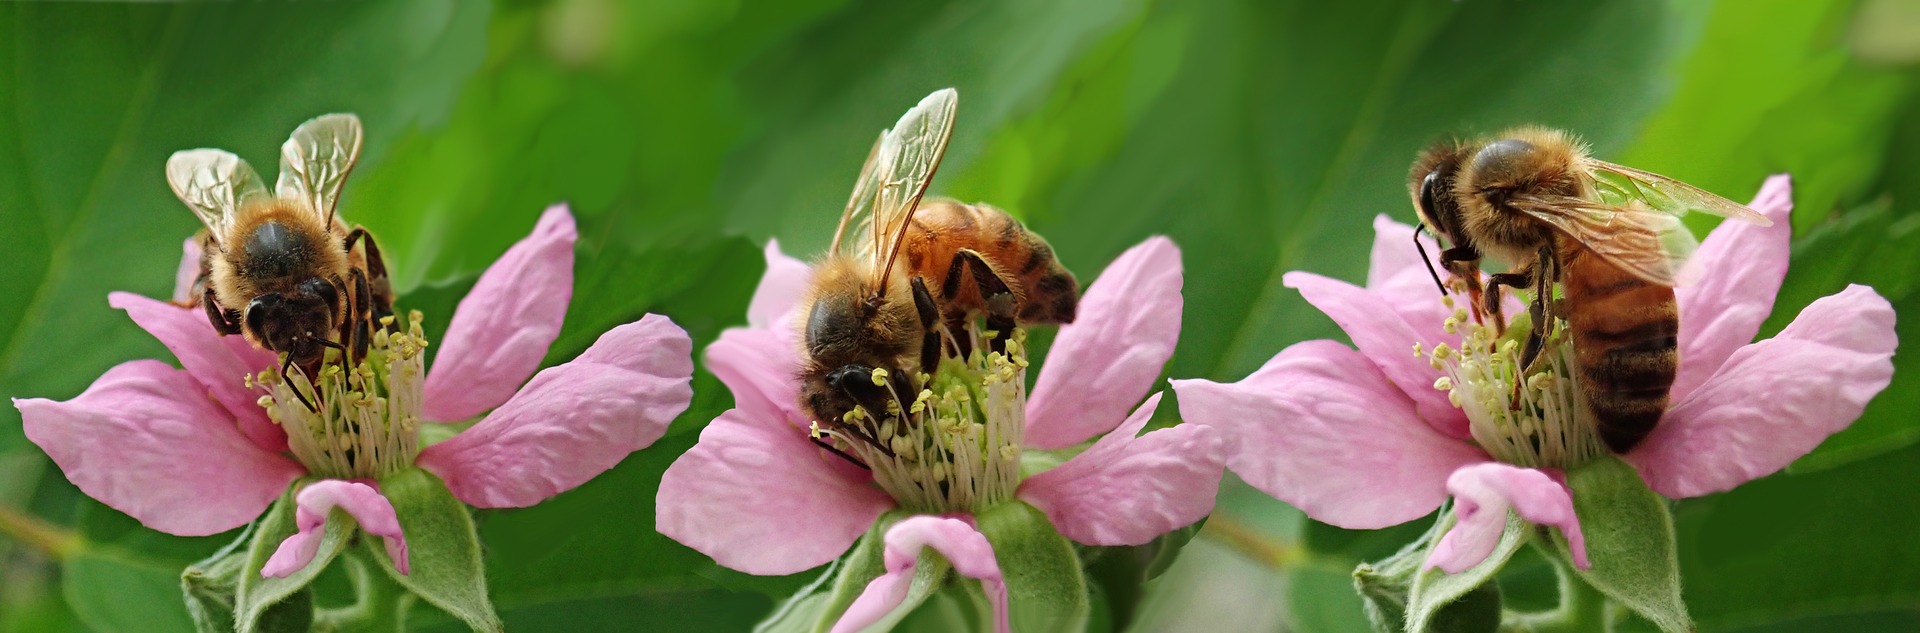 Čím krmit včely